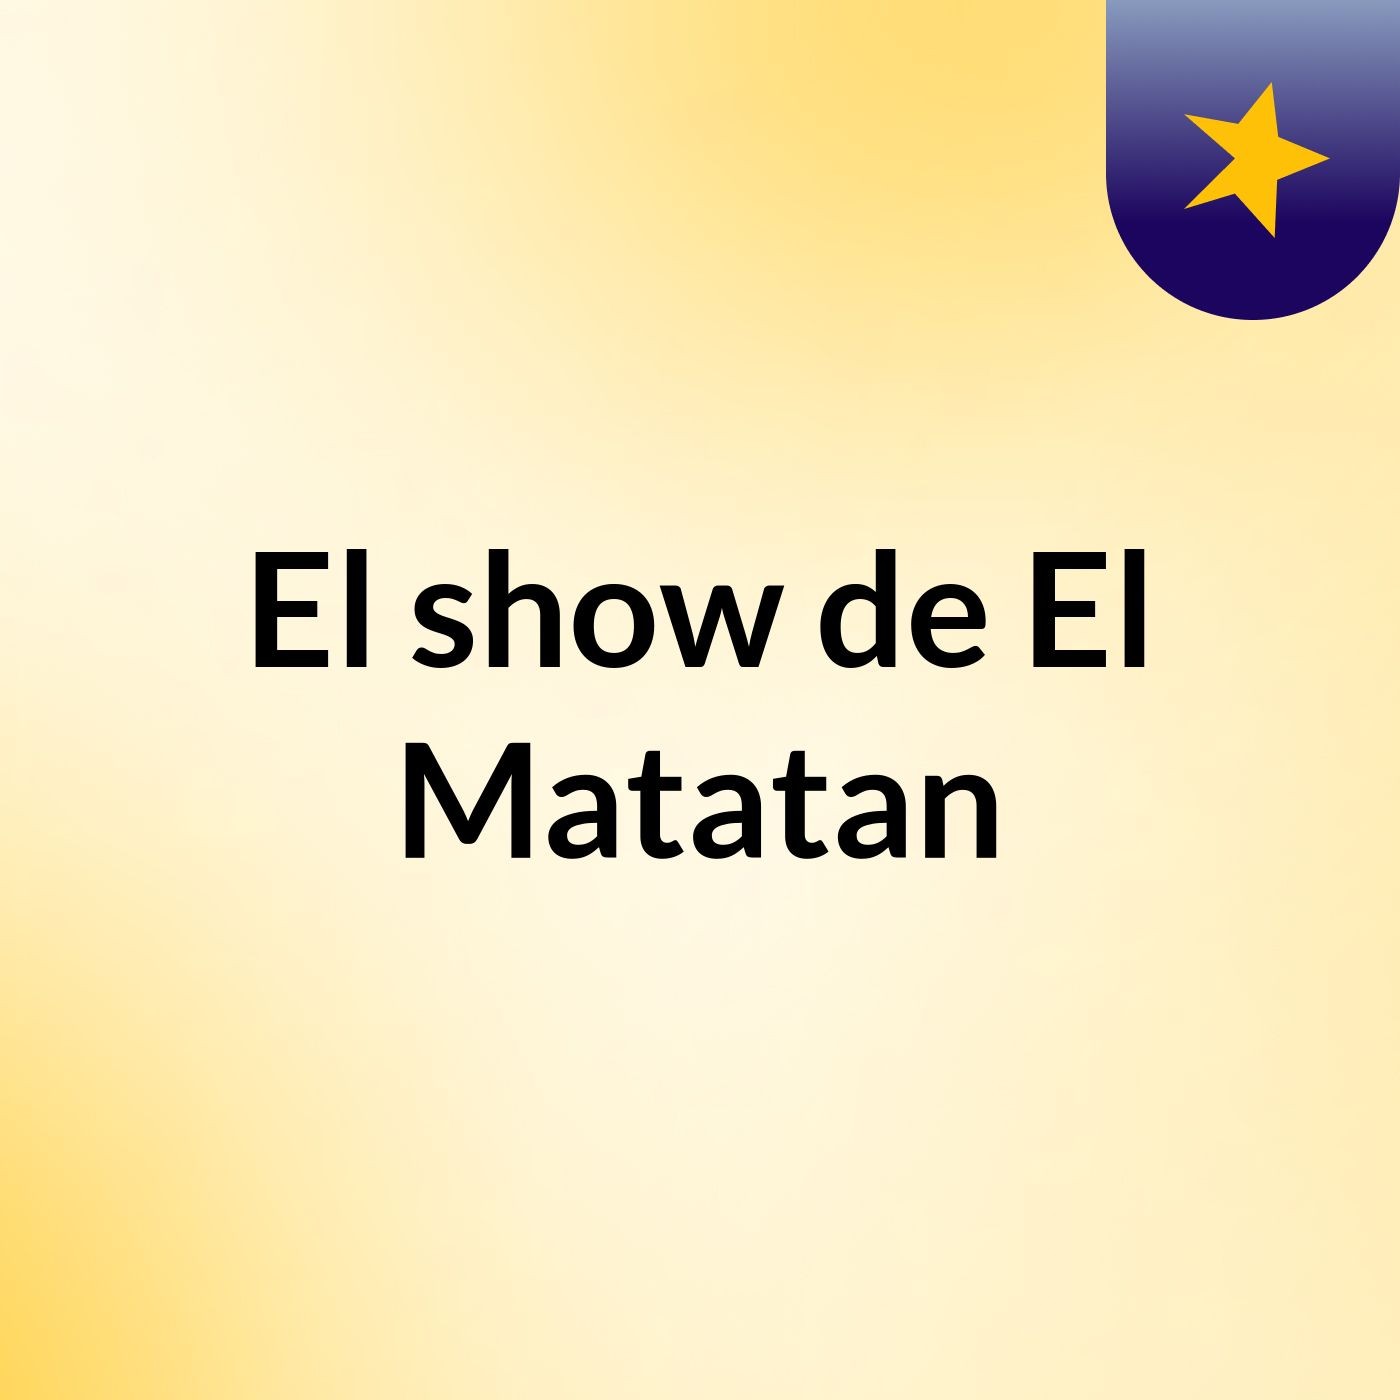 El show de El Matatan